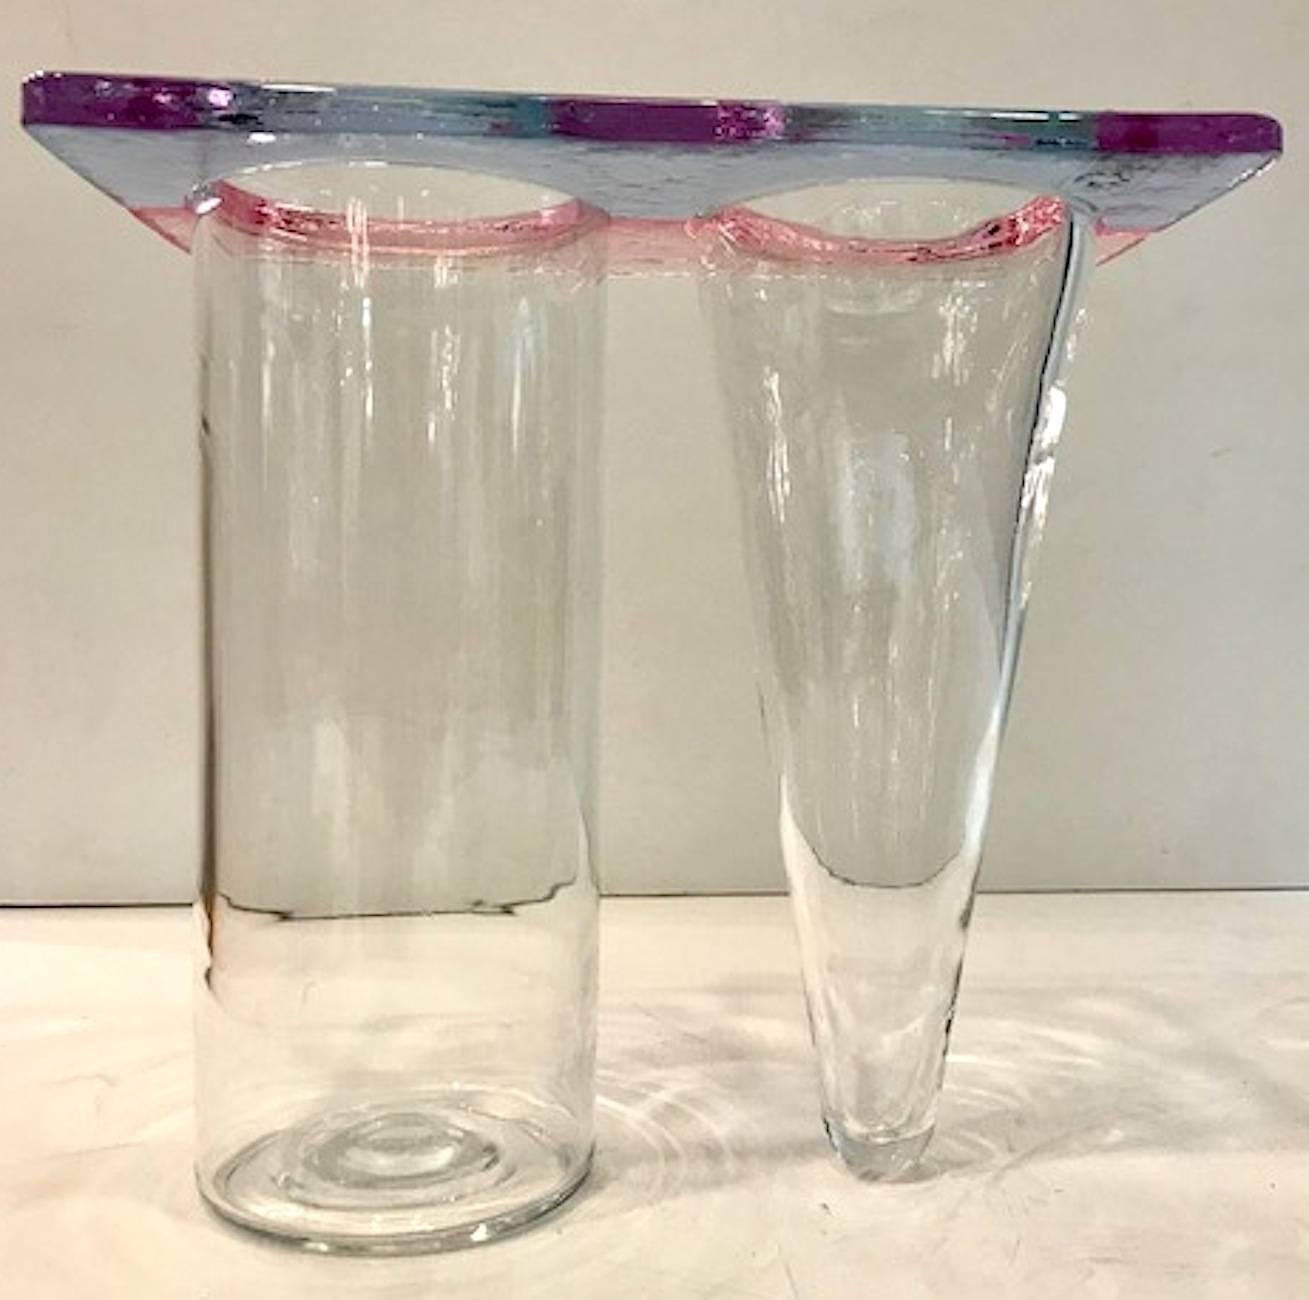 Eine Doppelvase mit geometrischem Design, typisch für den Memphis-Stil der 1980er Jahre. Die Doppelvase aus hellblauem, rosafarbenem und klarem Glas ist auf der einen Seite säulenförmig und auf der anderen Seite kegelförmig geblasen. Sehr sehr guter